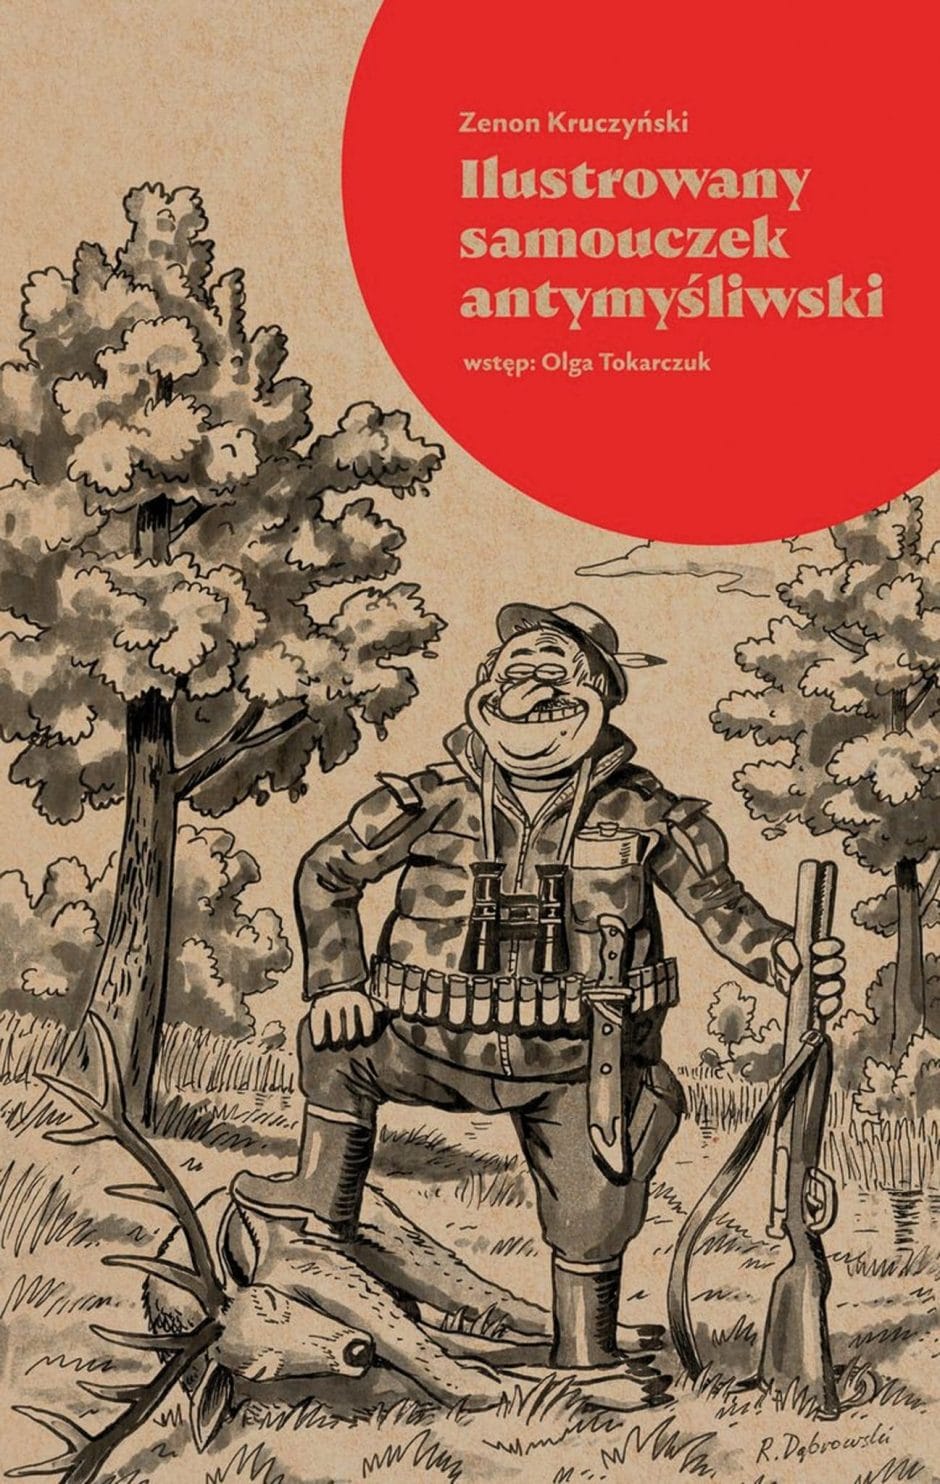 Zenon Kruczyński: Ilustrowany samouczek antymyśliwski